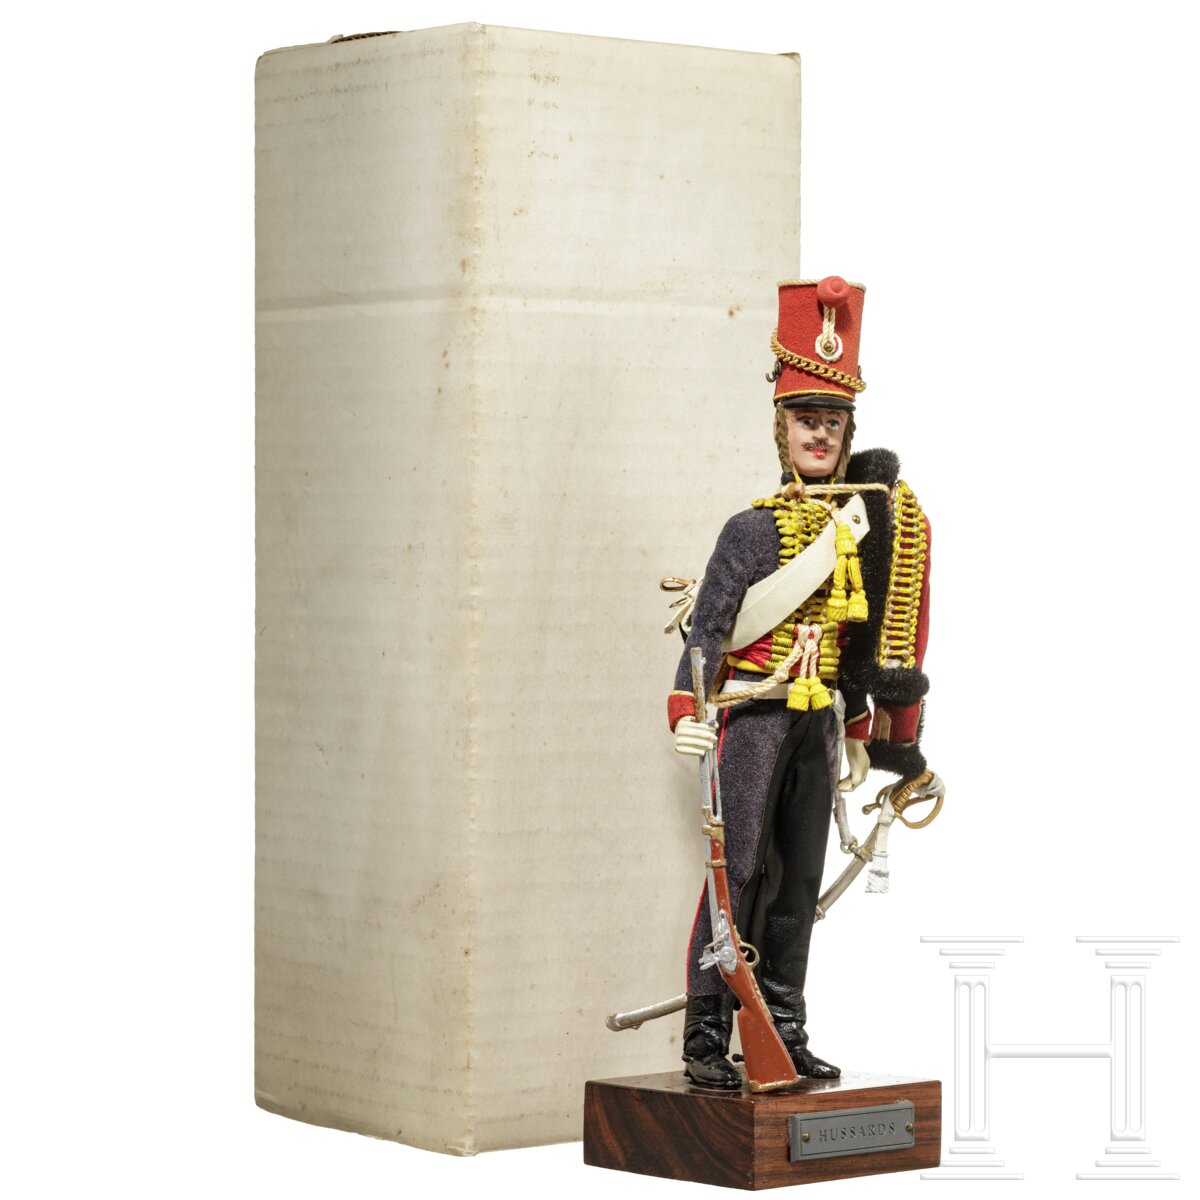 Husar um 1815 - Uniformfigur von Marcel Riffet, 20. Jhdt.